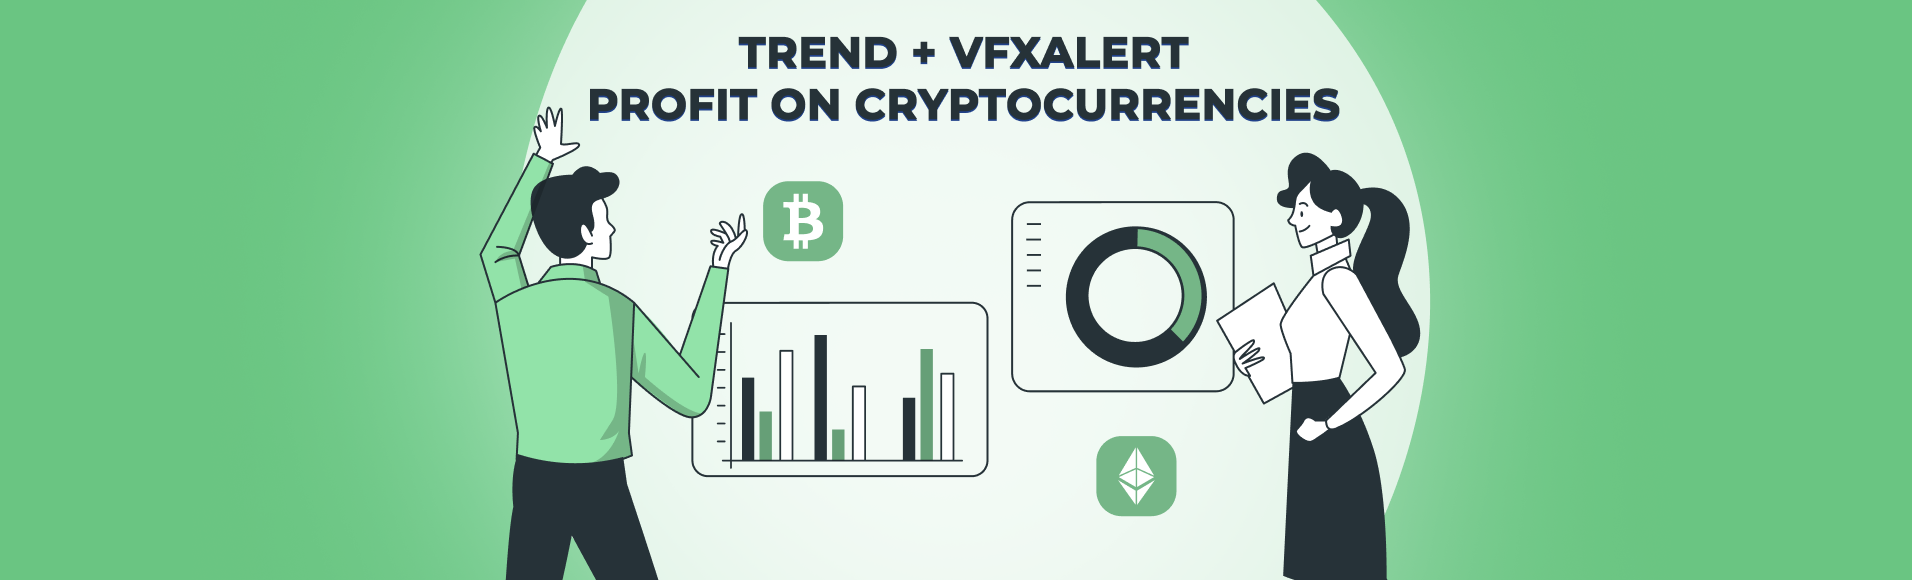 Trend + vfxAlert: lucro em criptomoedas.